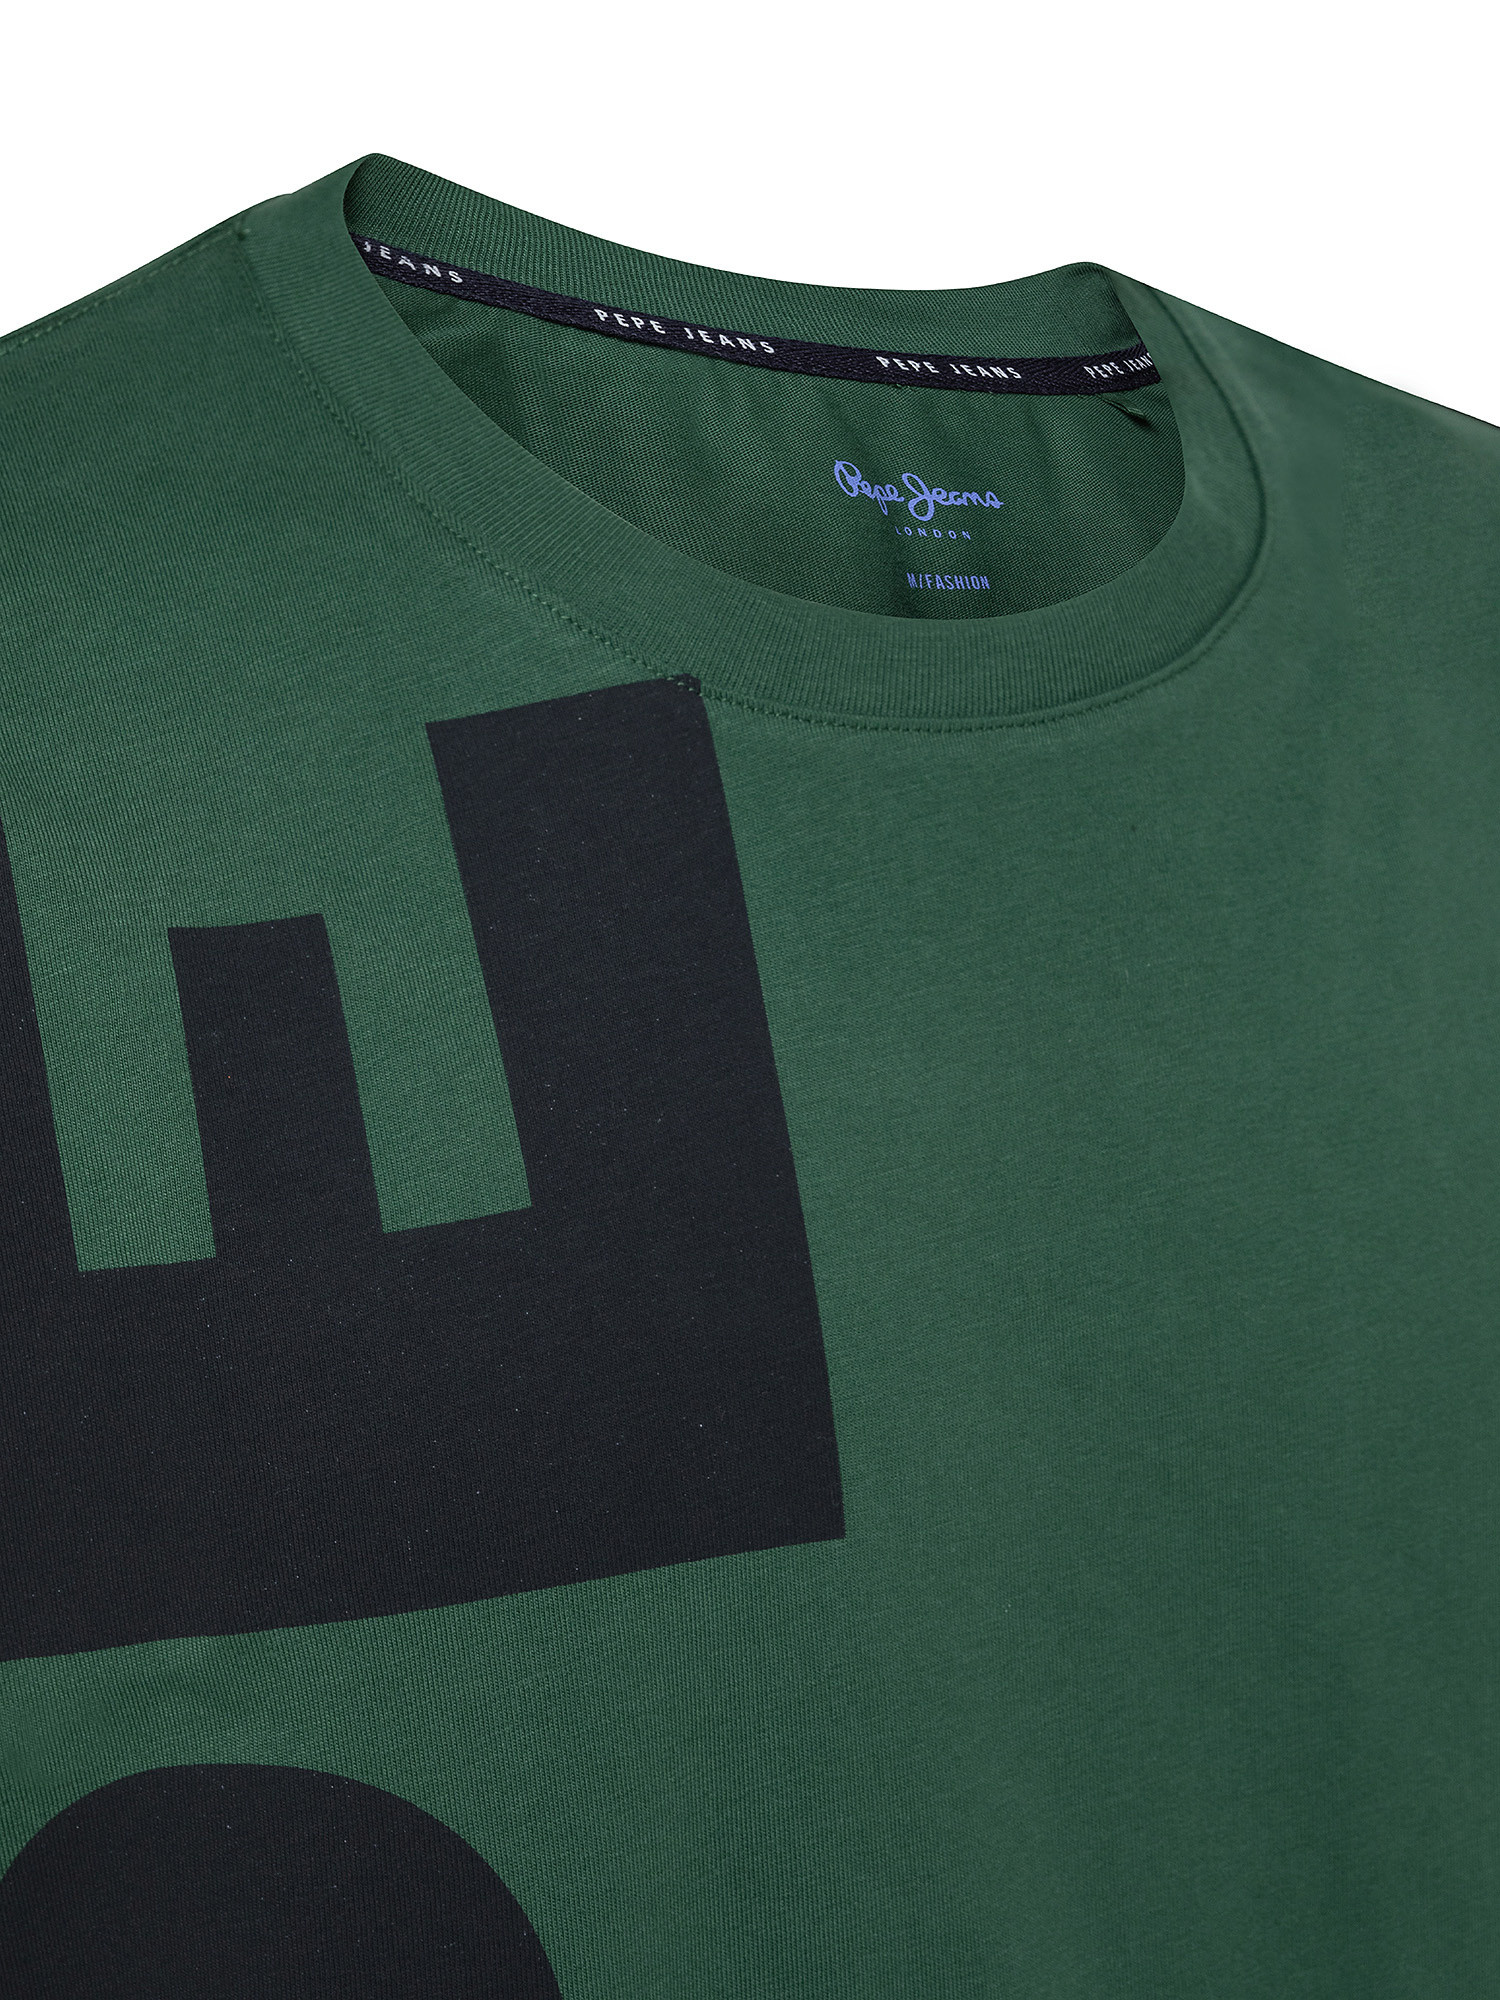 Shedrick cotton T-shirt, Green, large image number 2